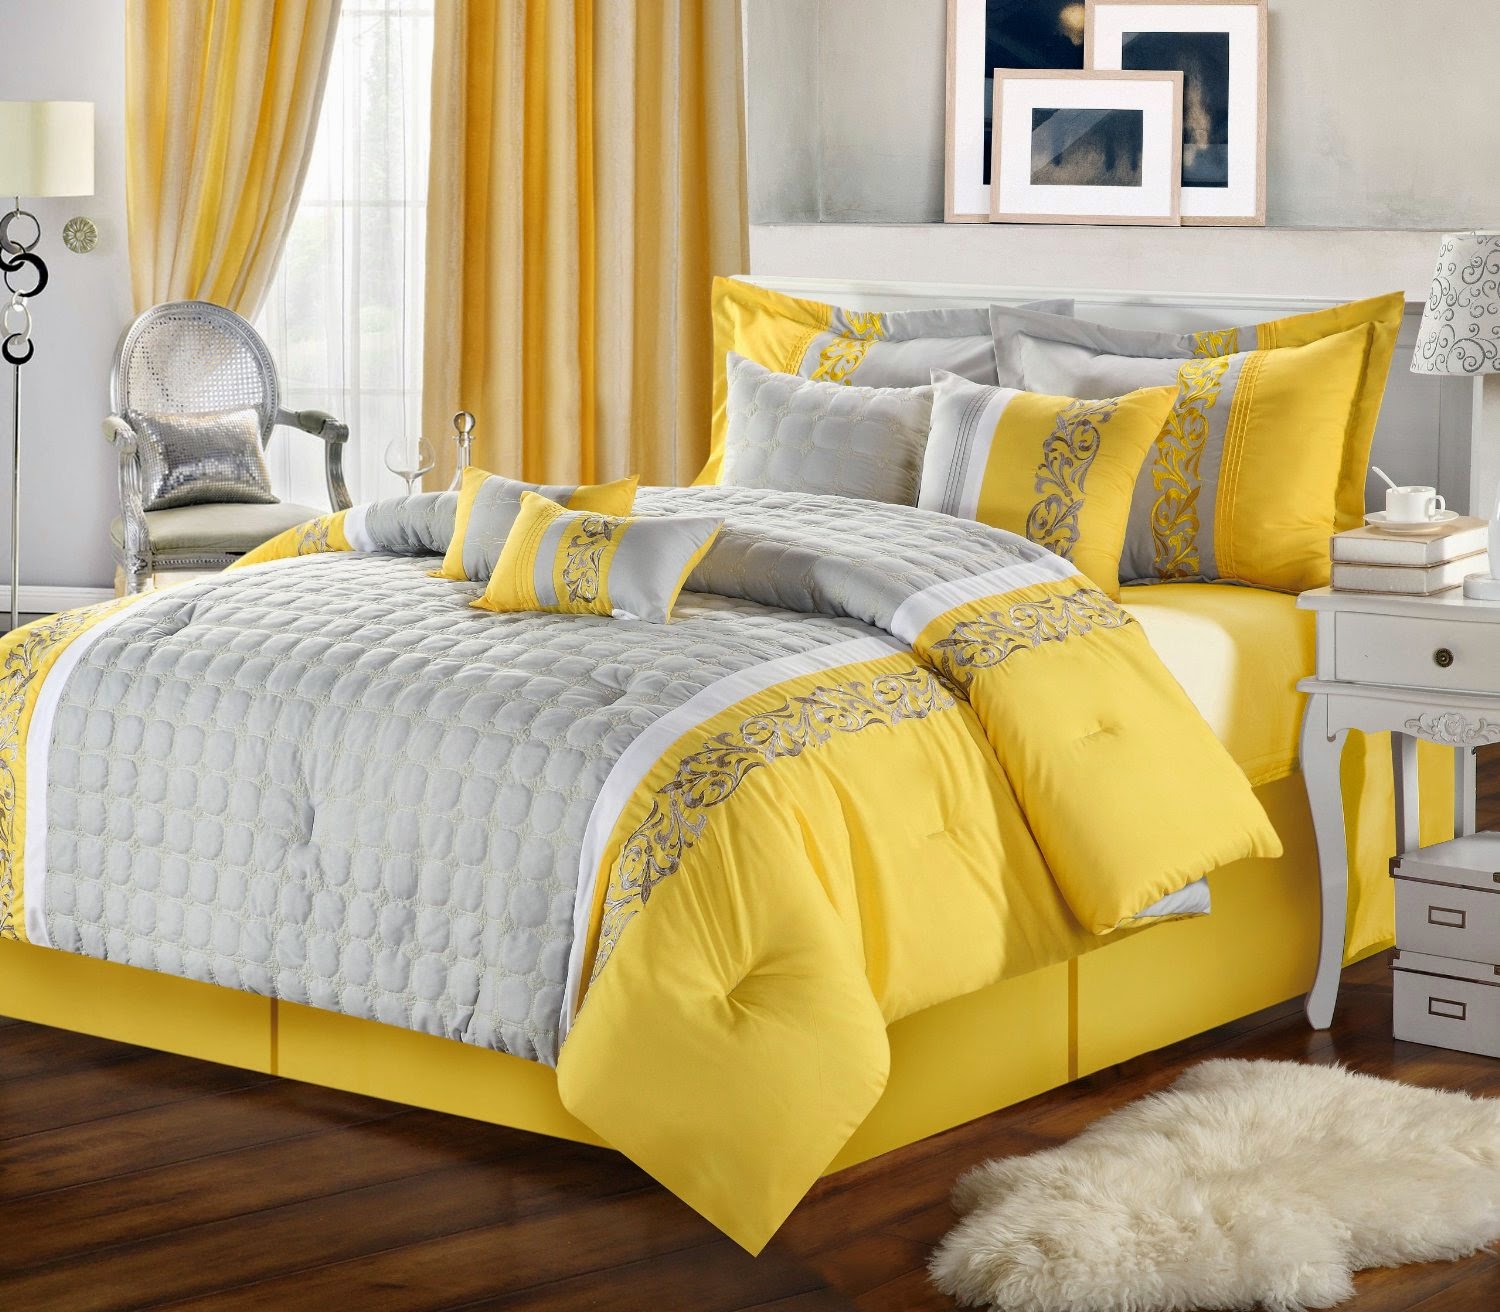 Bilik Tidur Warna Kuning  Desainrumahid com